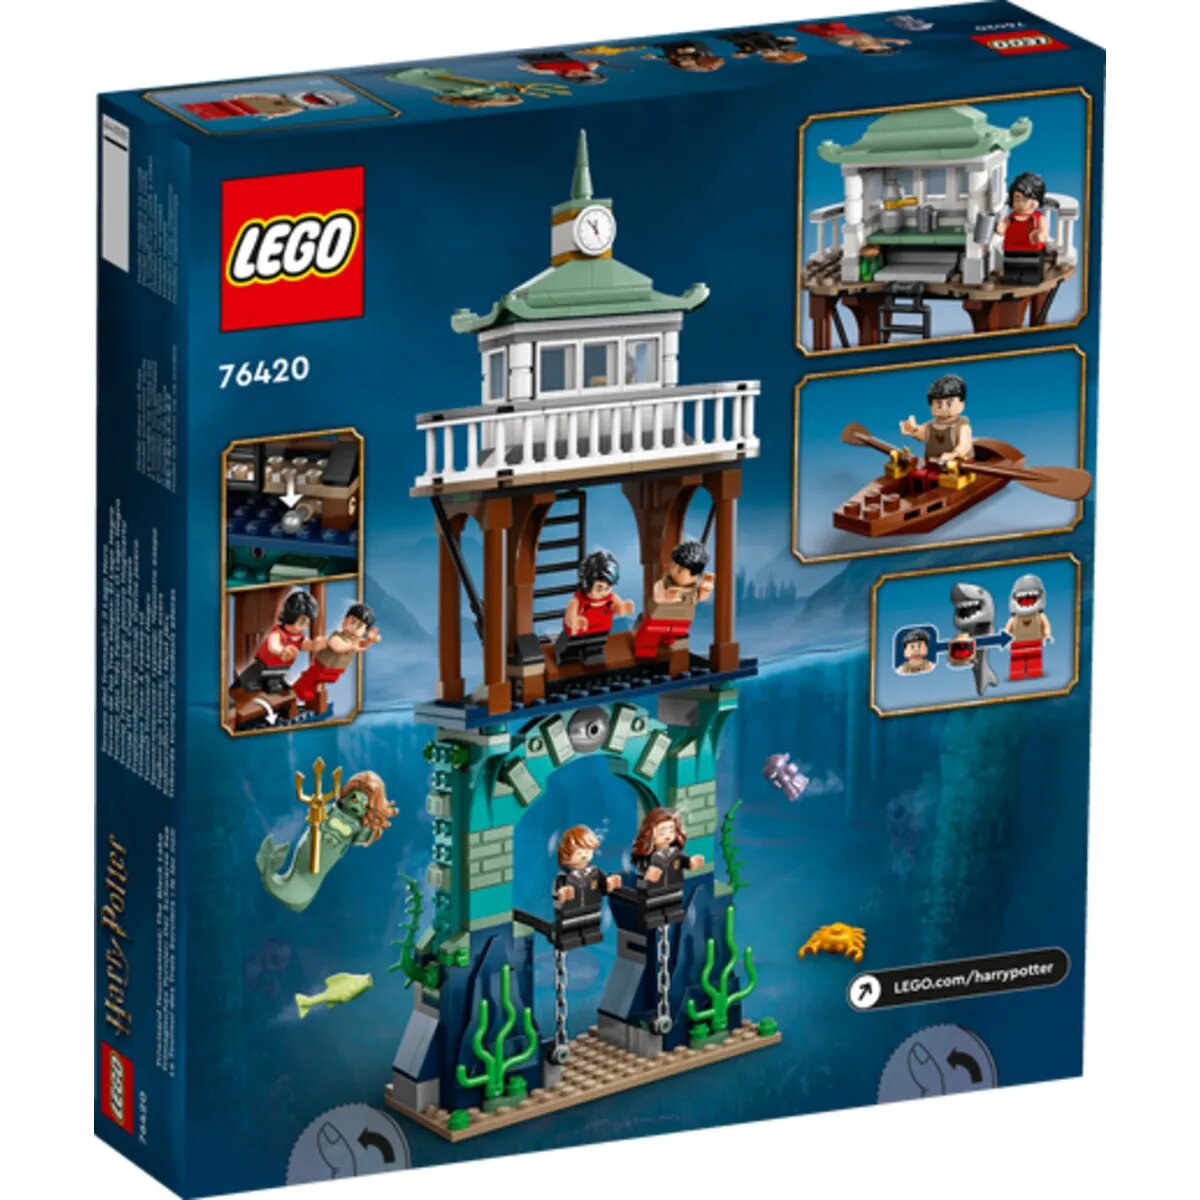 LEGO® Harry Potter™ 76420 Trimagisches Turnier: Der Schwarze See